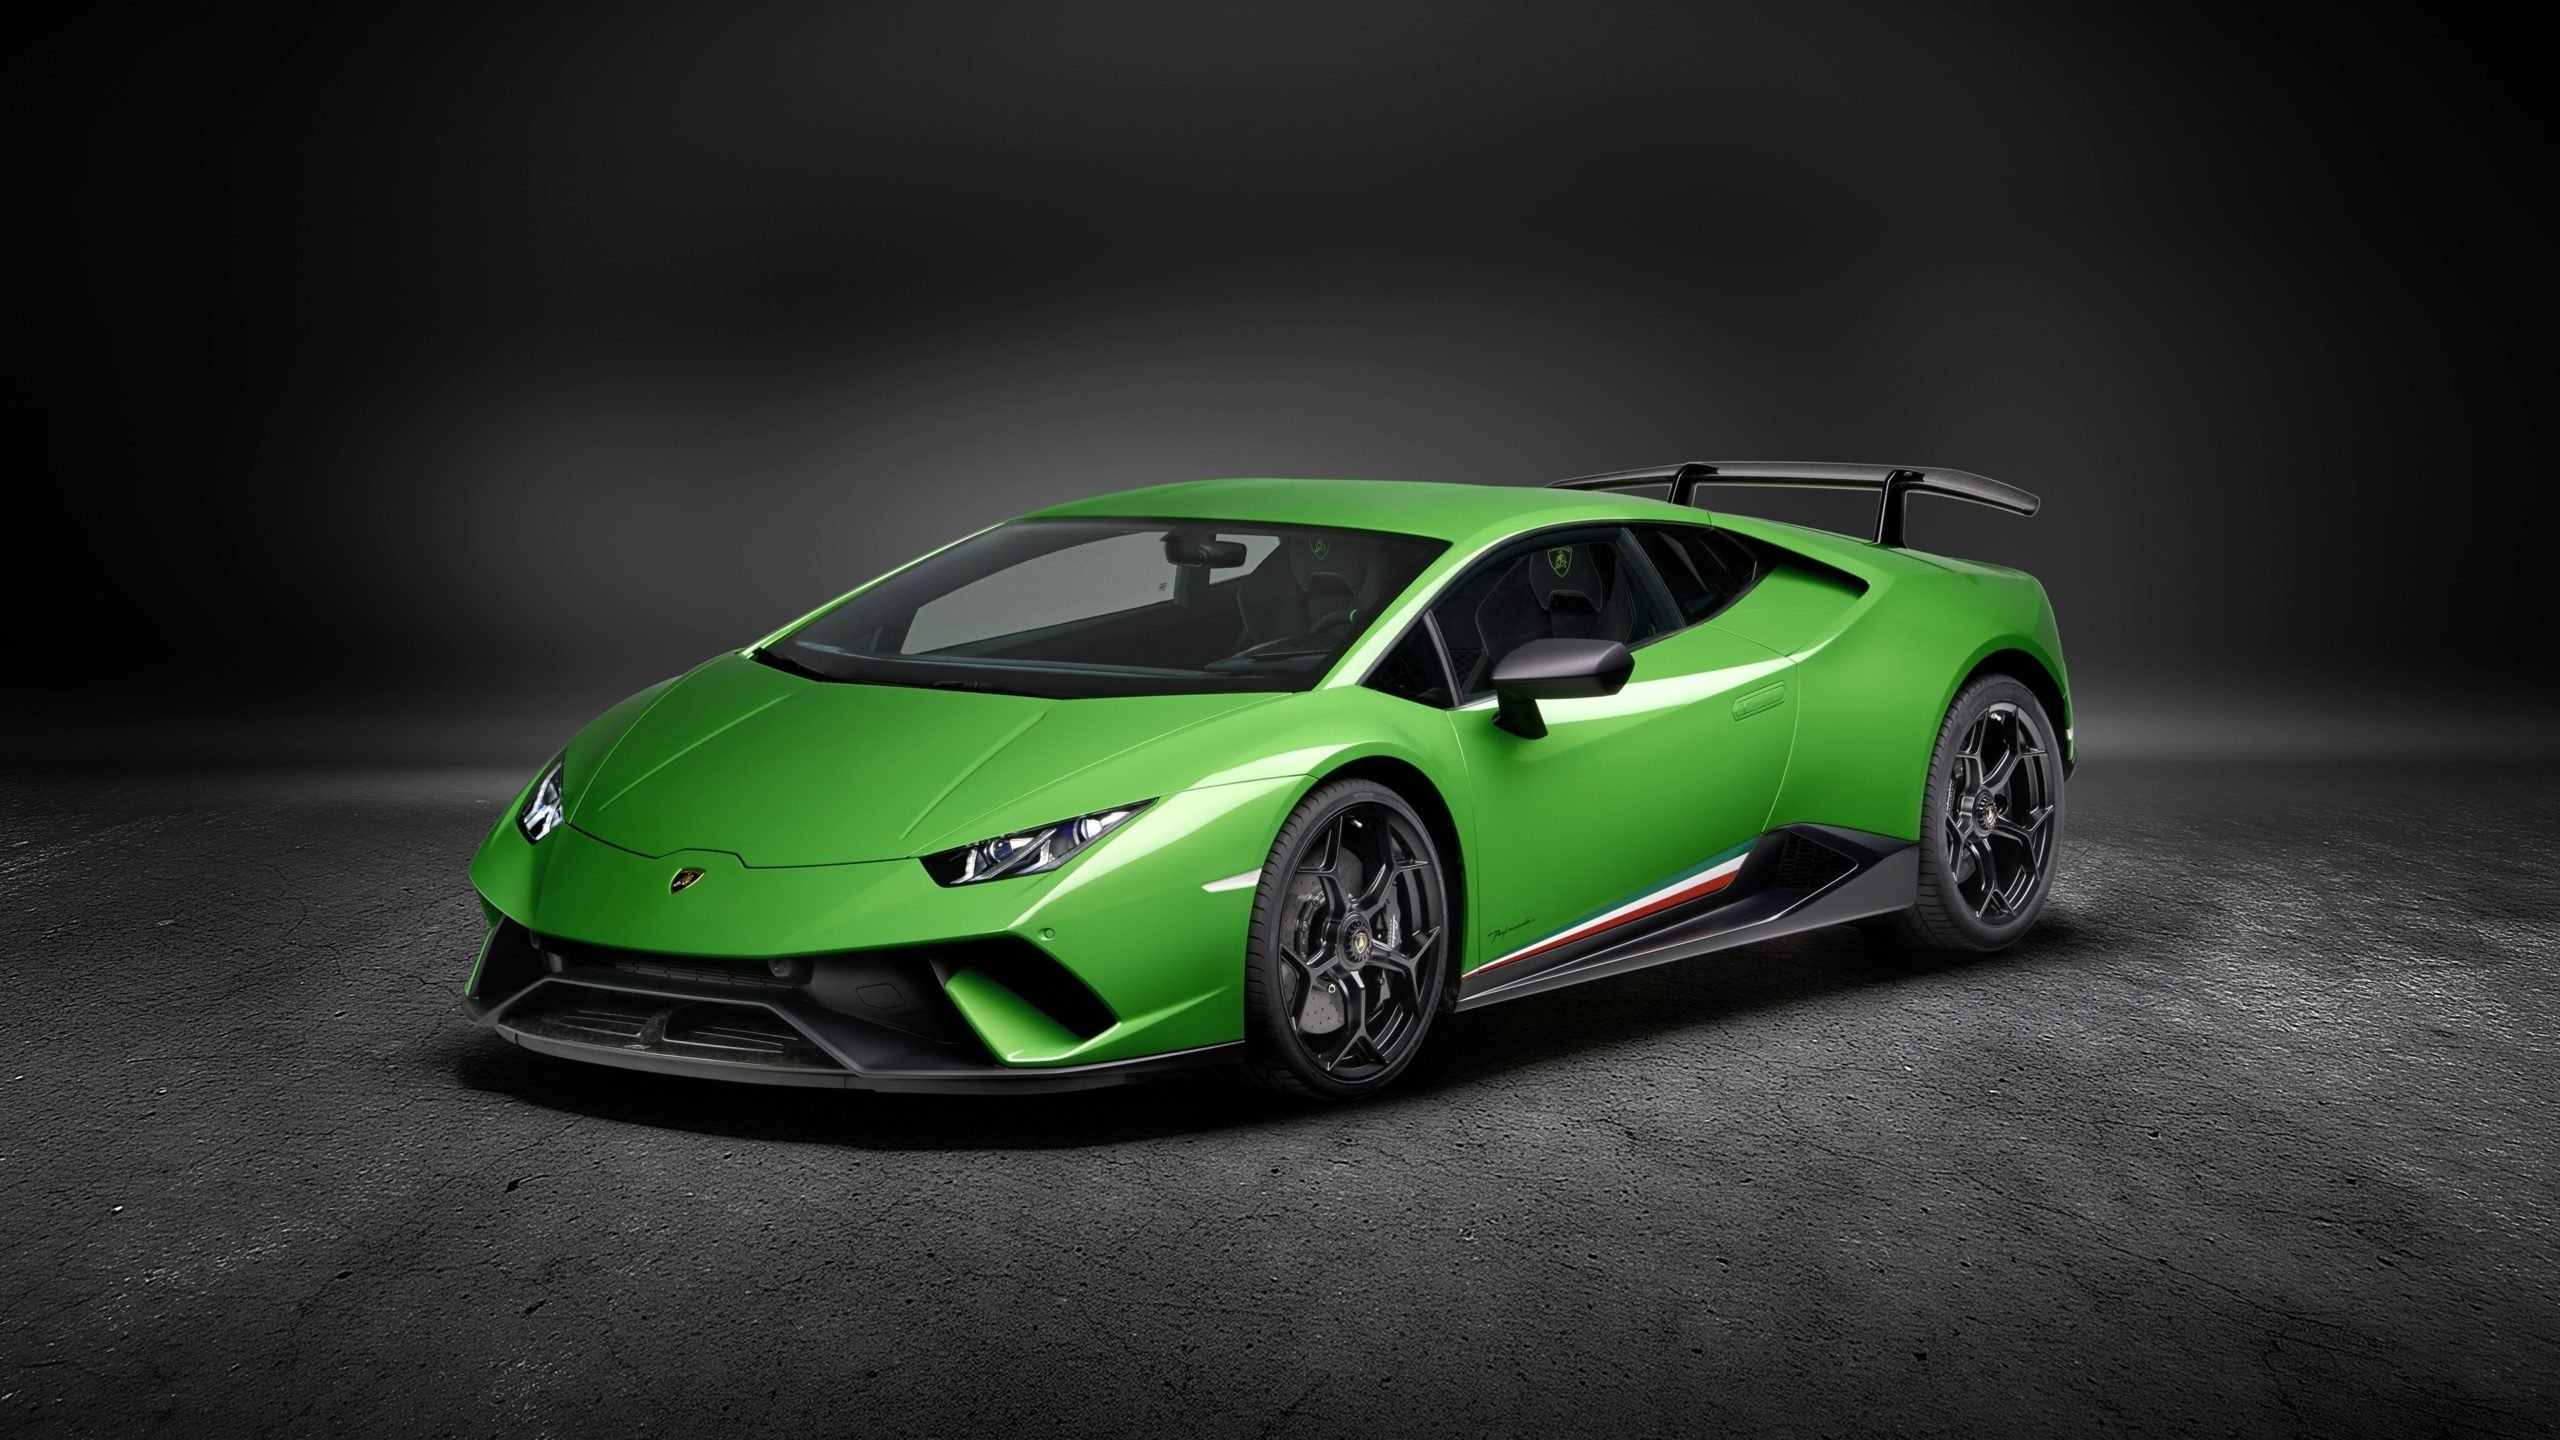 Hình nền siêu xe Lamborghini full HD đẹp nhất - [Kích thước hình ảnh: 2560x1440 px]